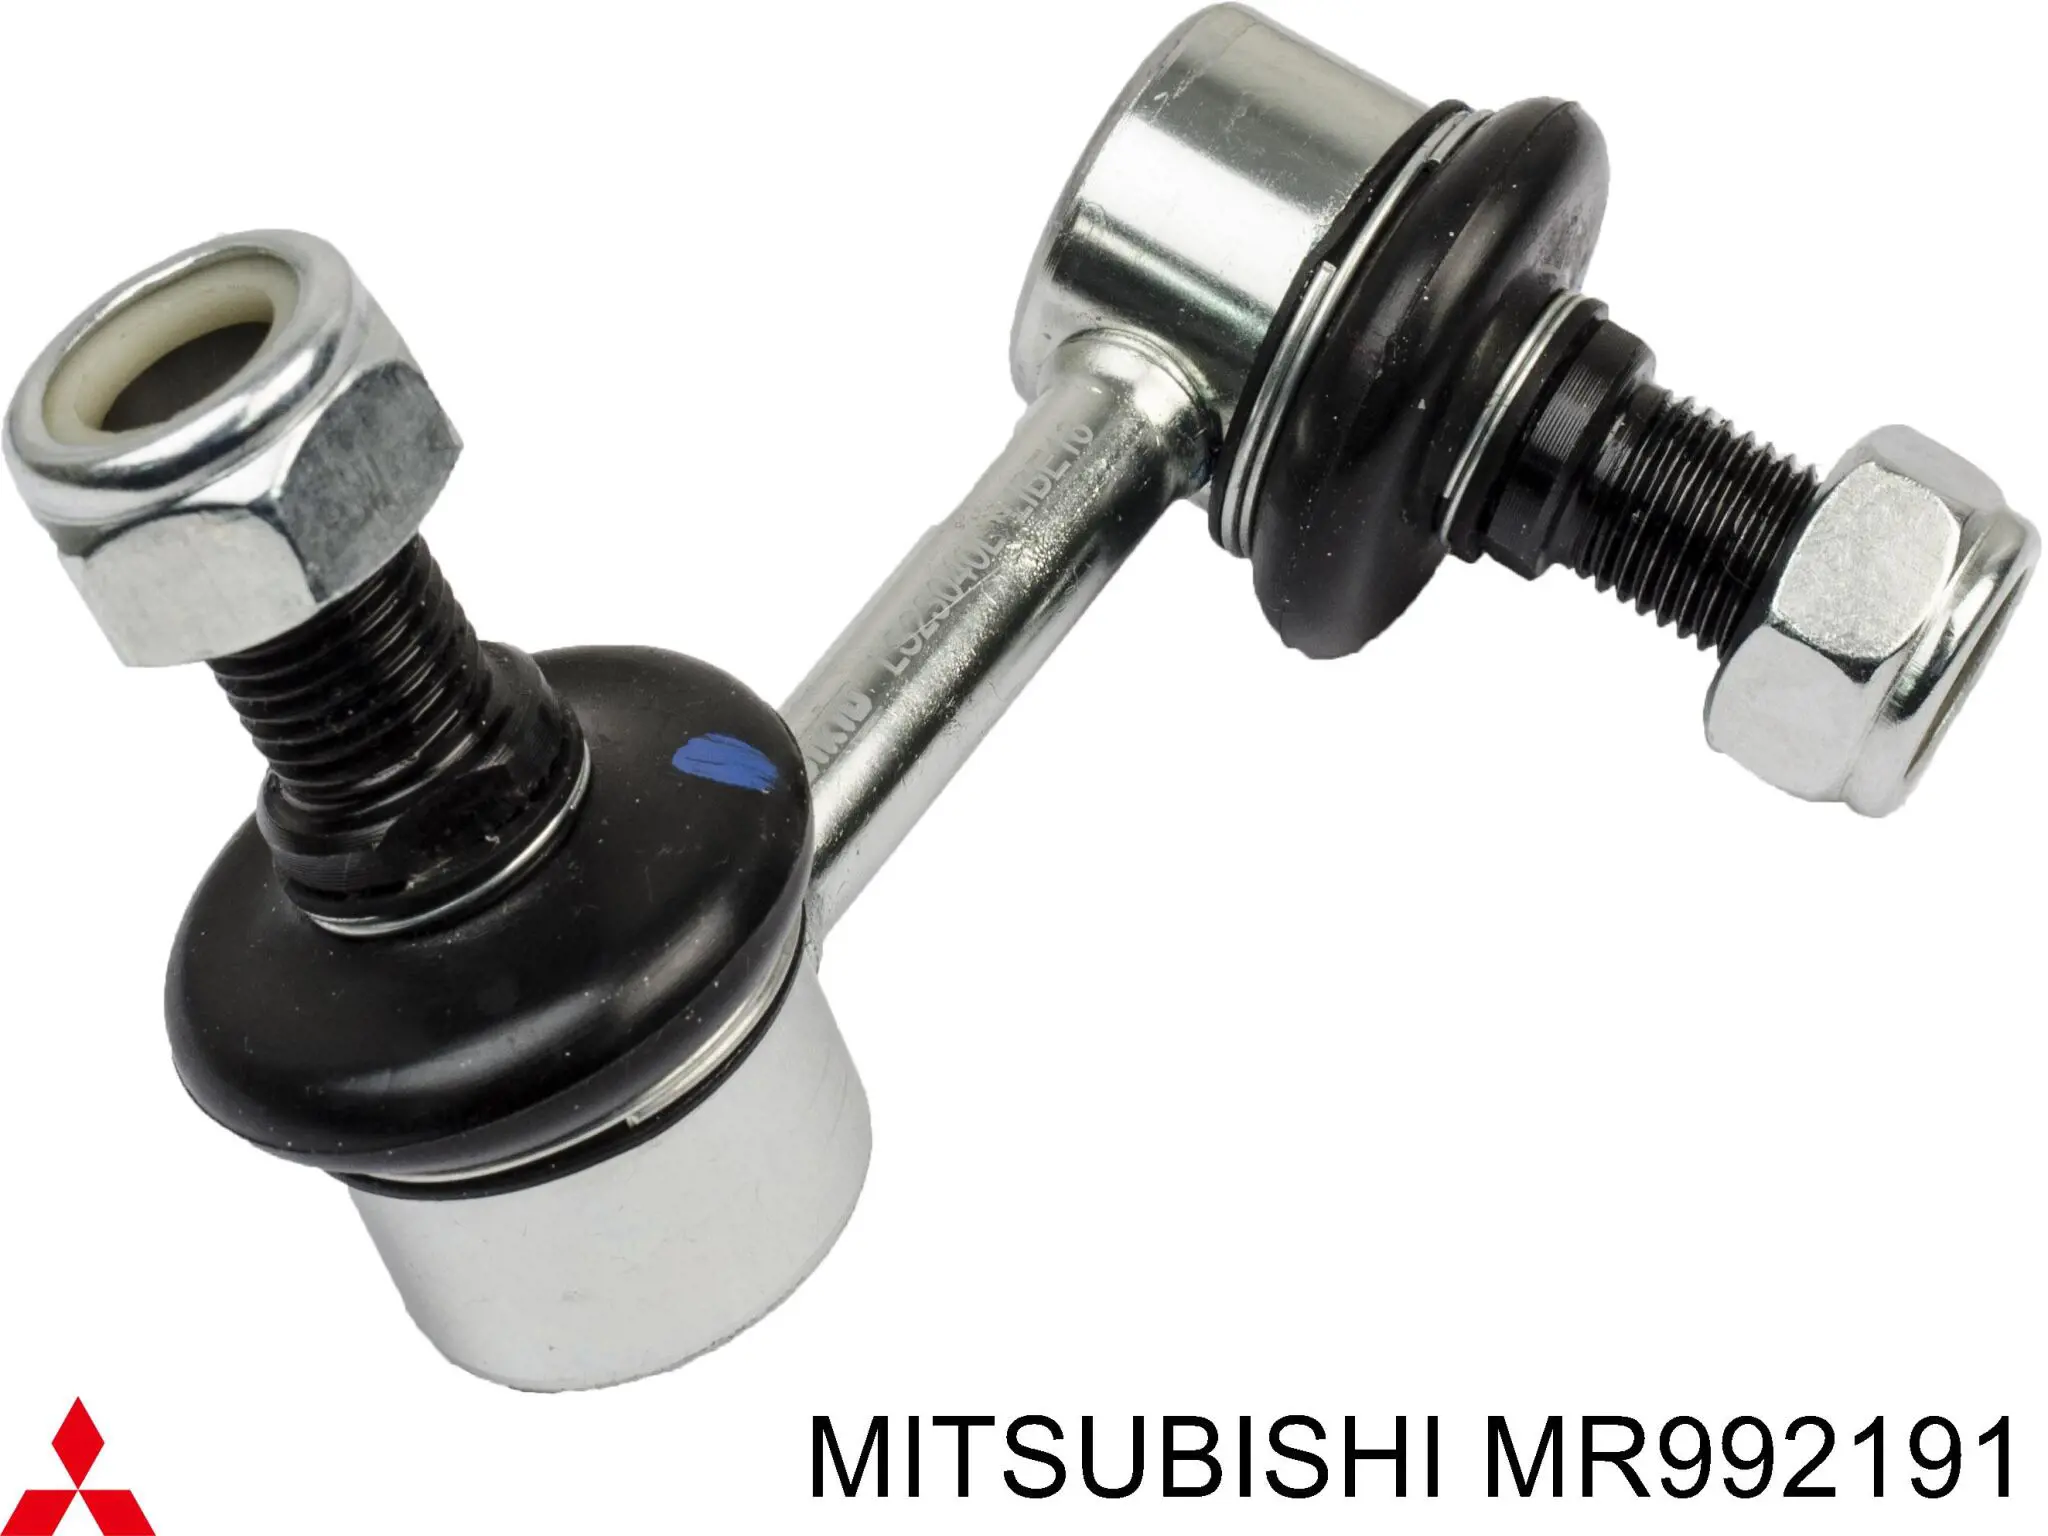 MR992191 Mitsubishi barra estabilizadora delantera izquierda